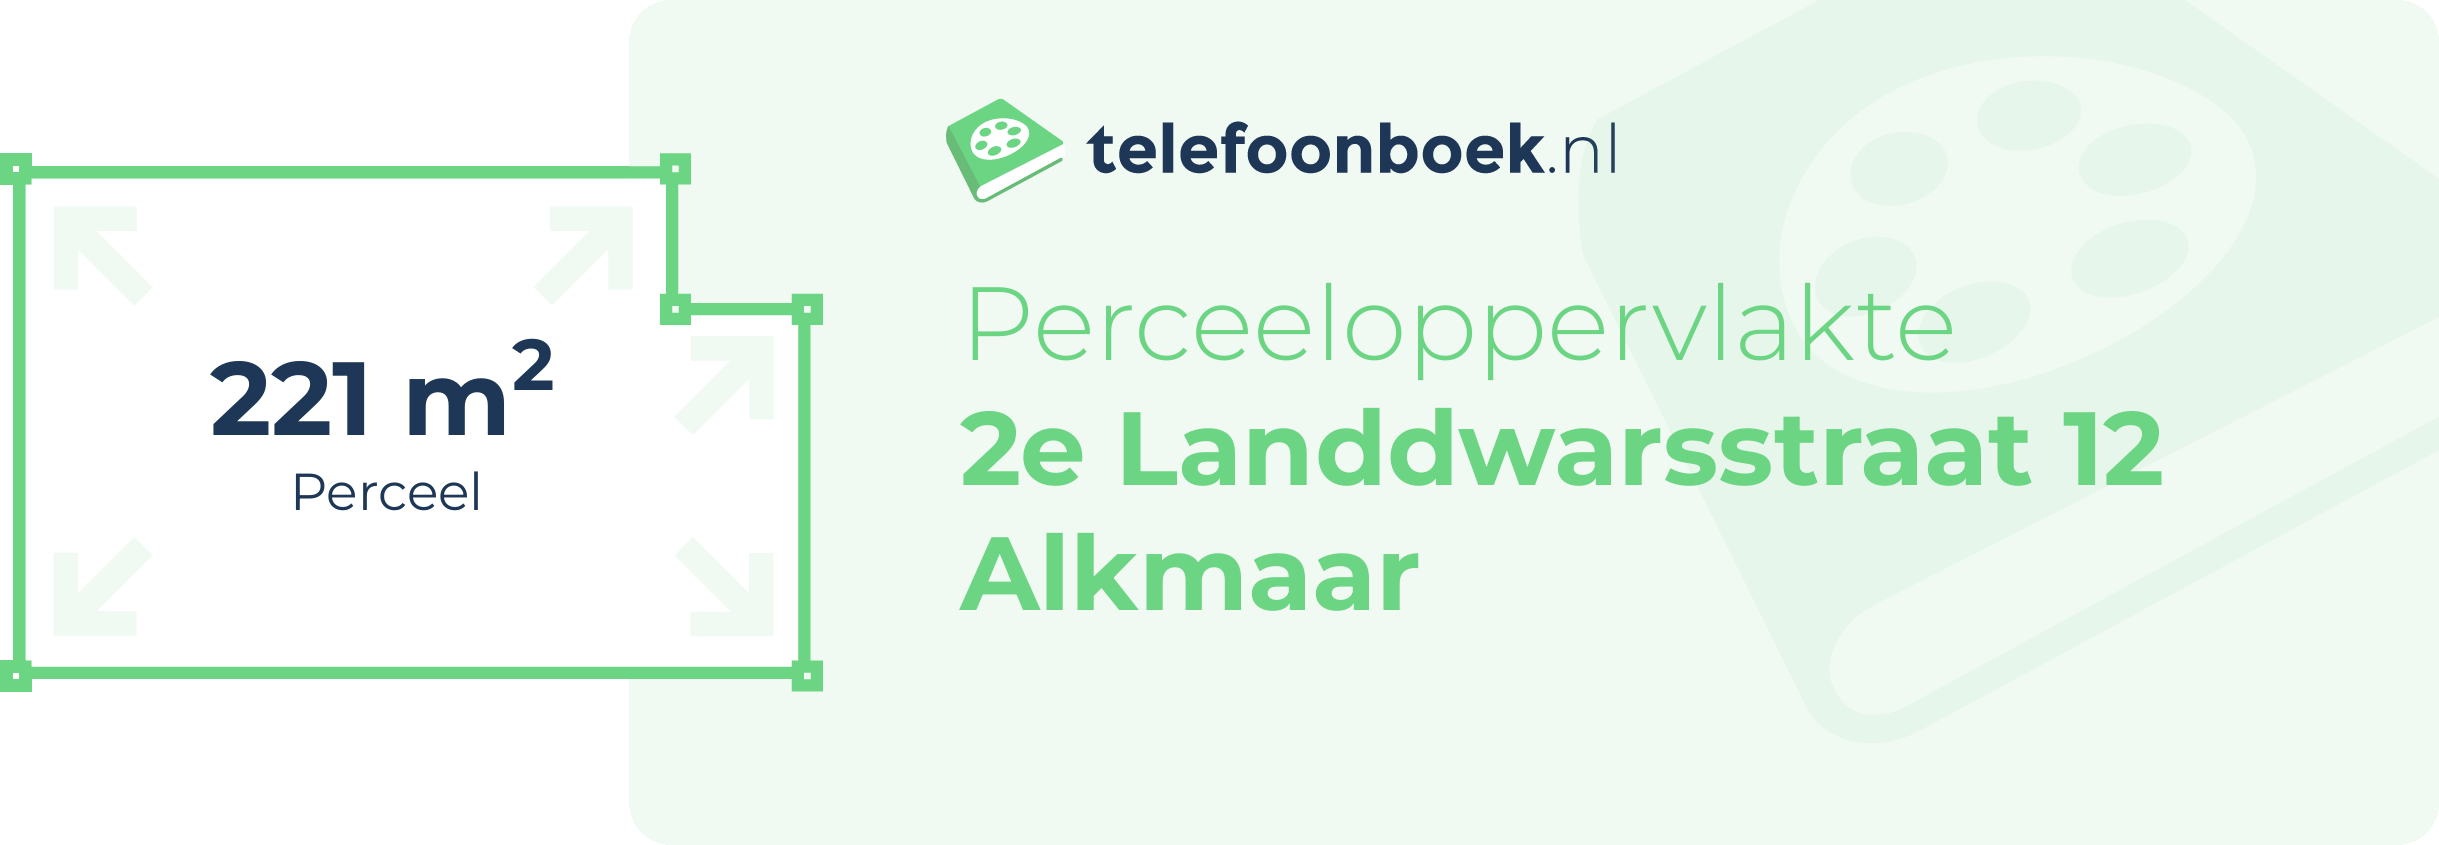 Perceeloppervlakte 2e Landdwarsstraat 12 Alkmaar